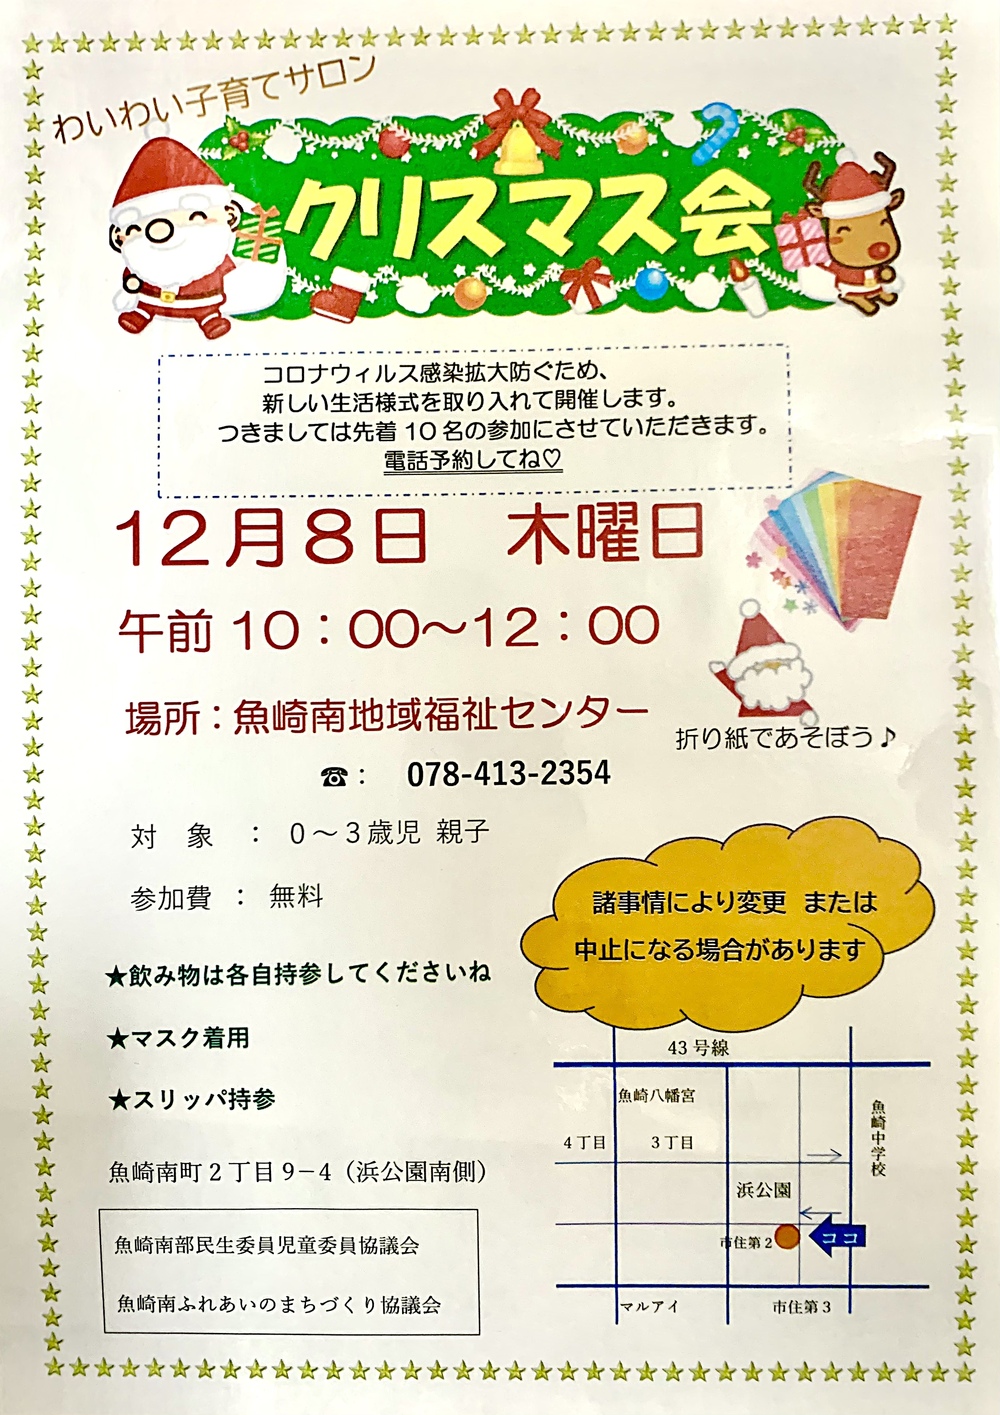 Salão de puericultura Waiwai Festa de Natal em dezembro Produção de origami